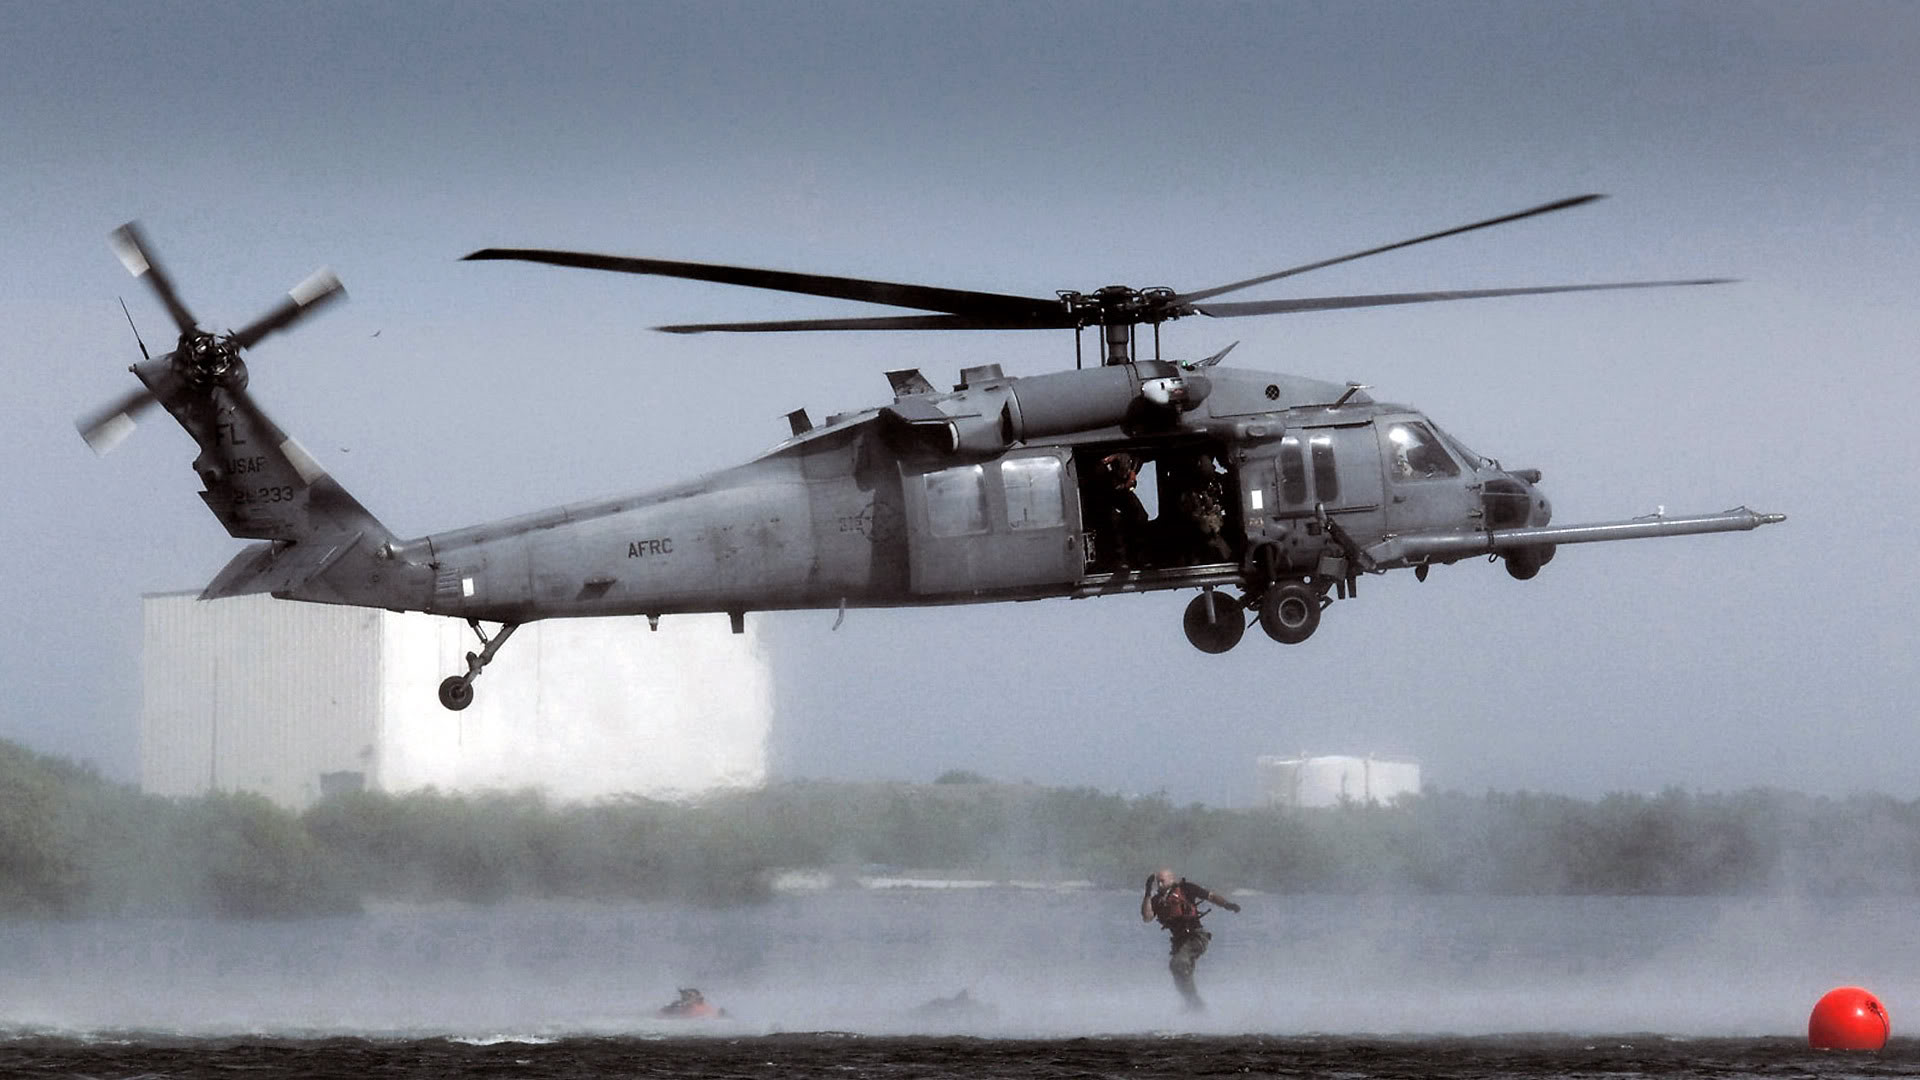 самолет, военный, вертолеты, транспортные средства, UH- 60 Ночной ястреб - обои на рабочий стол